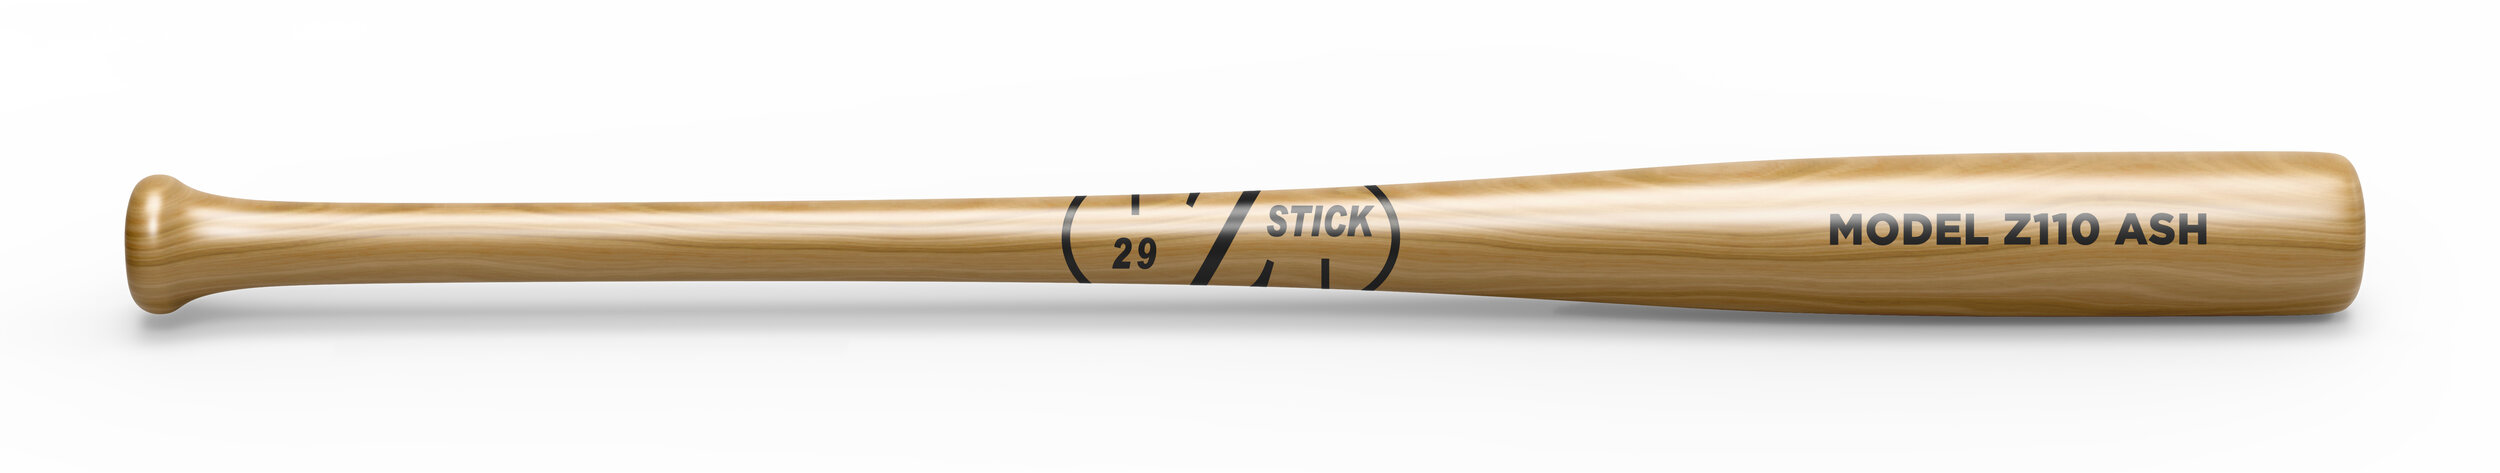 Z Stick Baseball